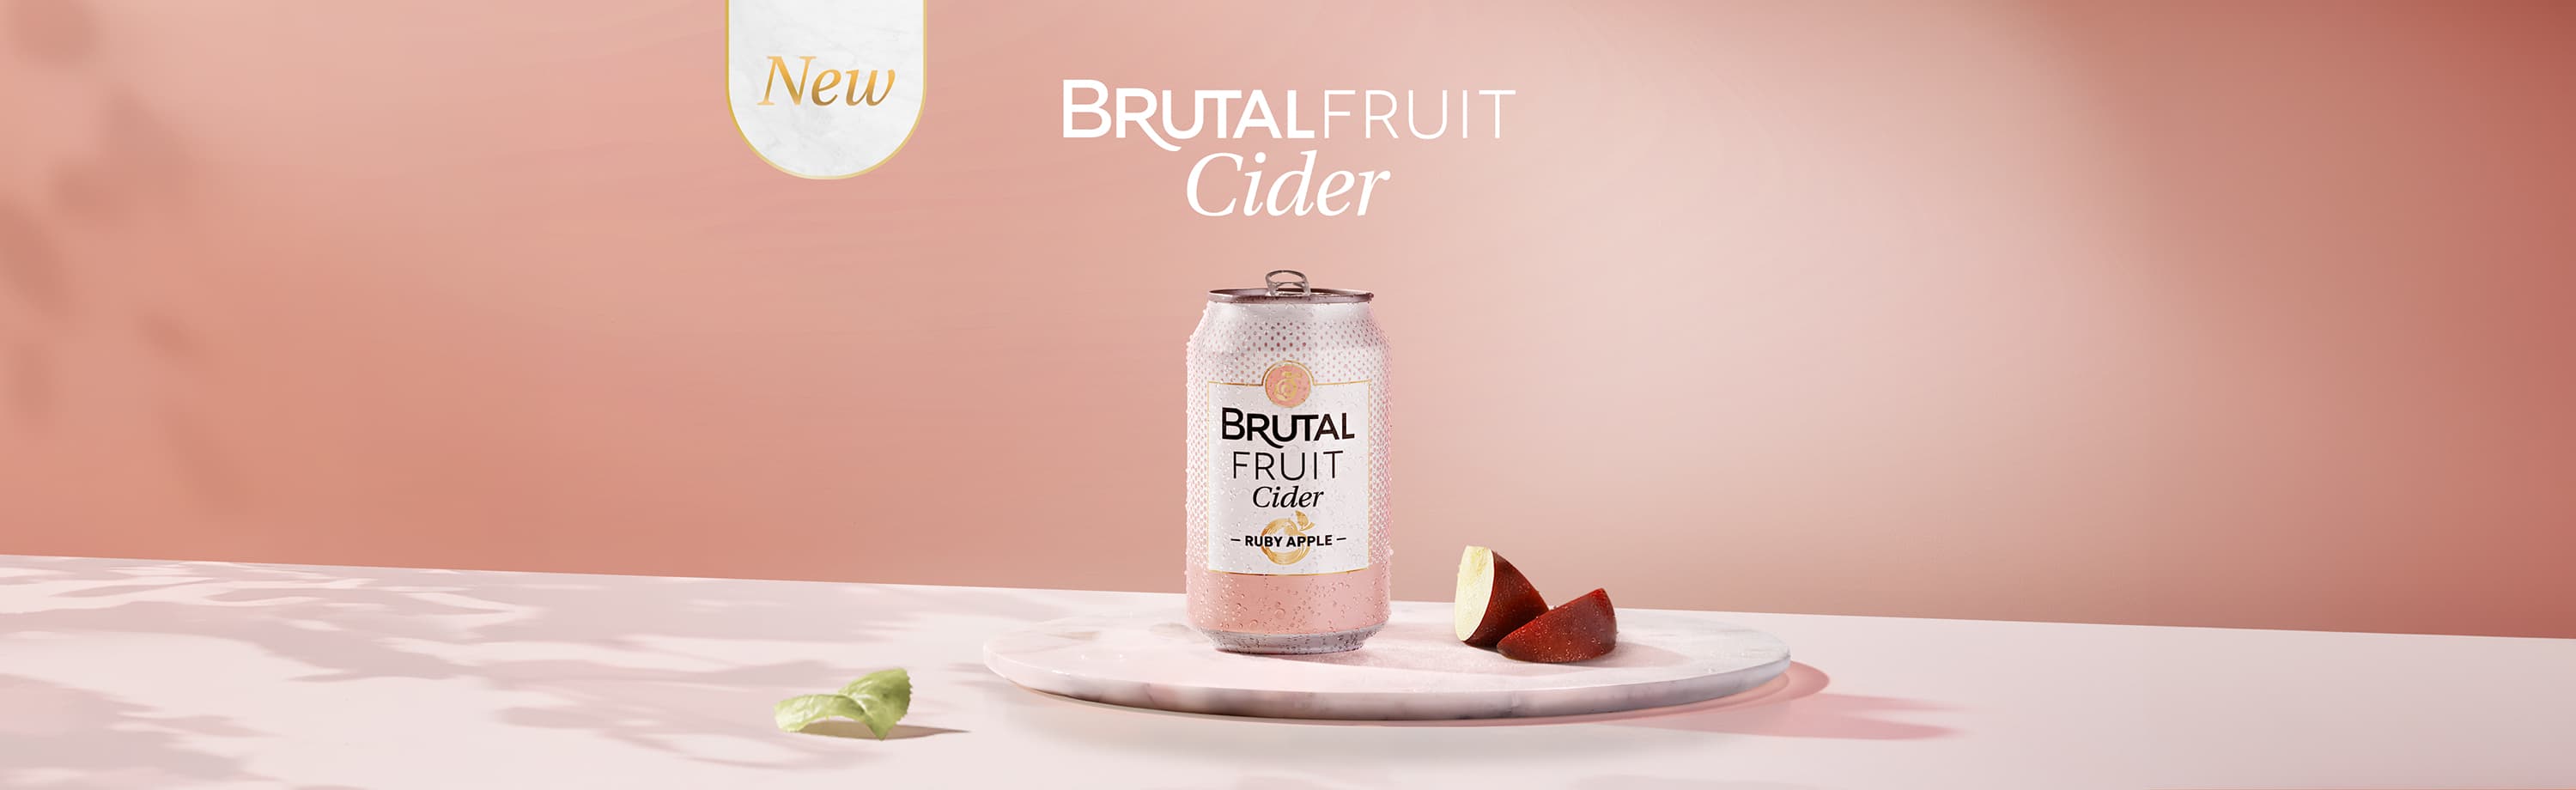 Brutal Fruit Cider